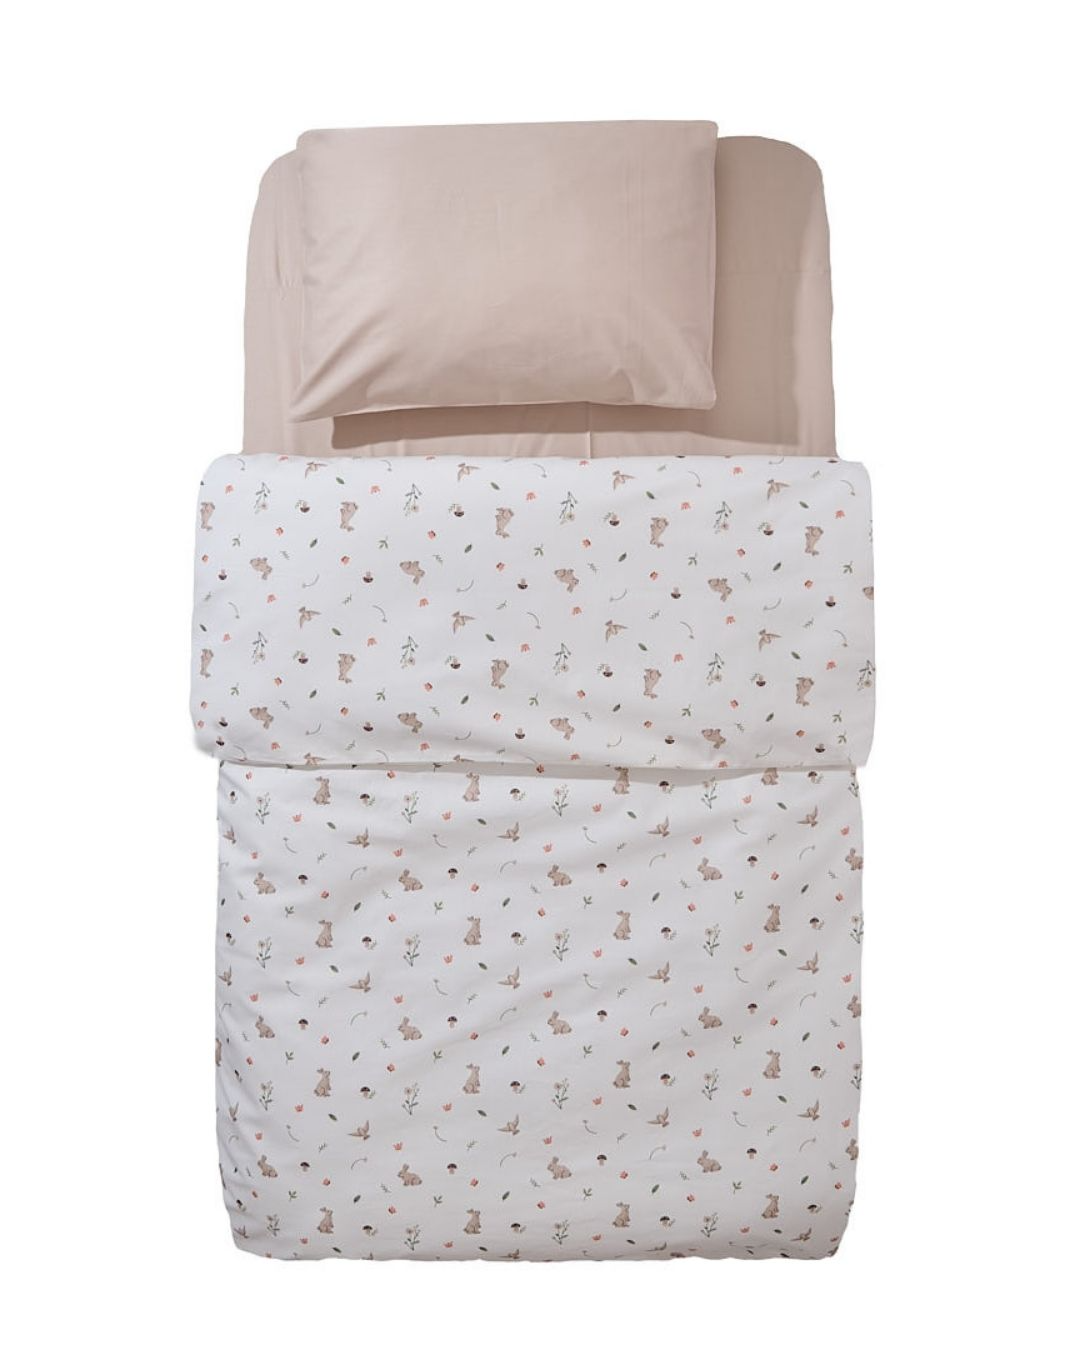 posteljina za bebe set od dva dela navlaka za prekrivac sa motivom livade jastucnica bez boje na beloj pozadini